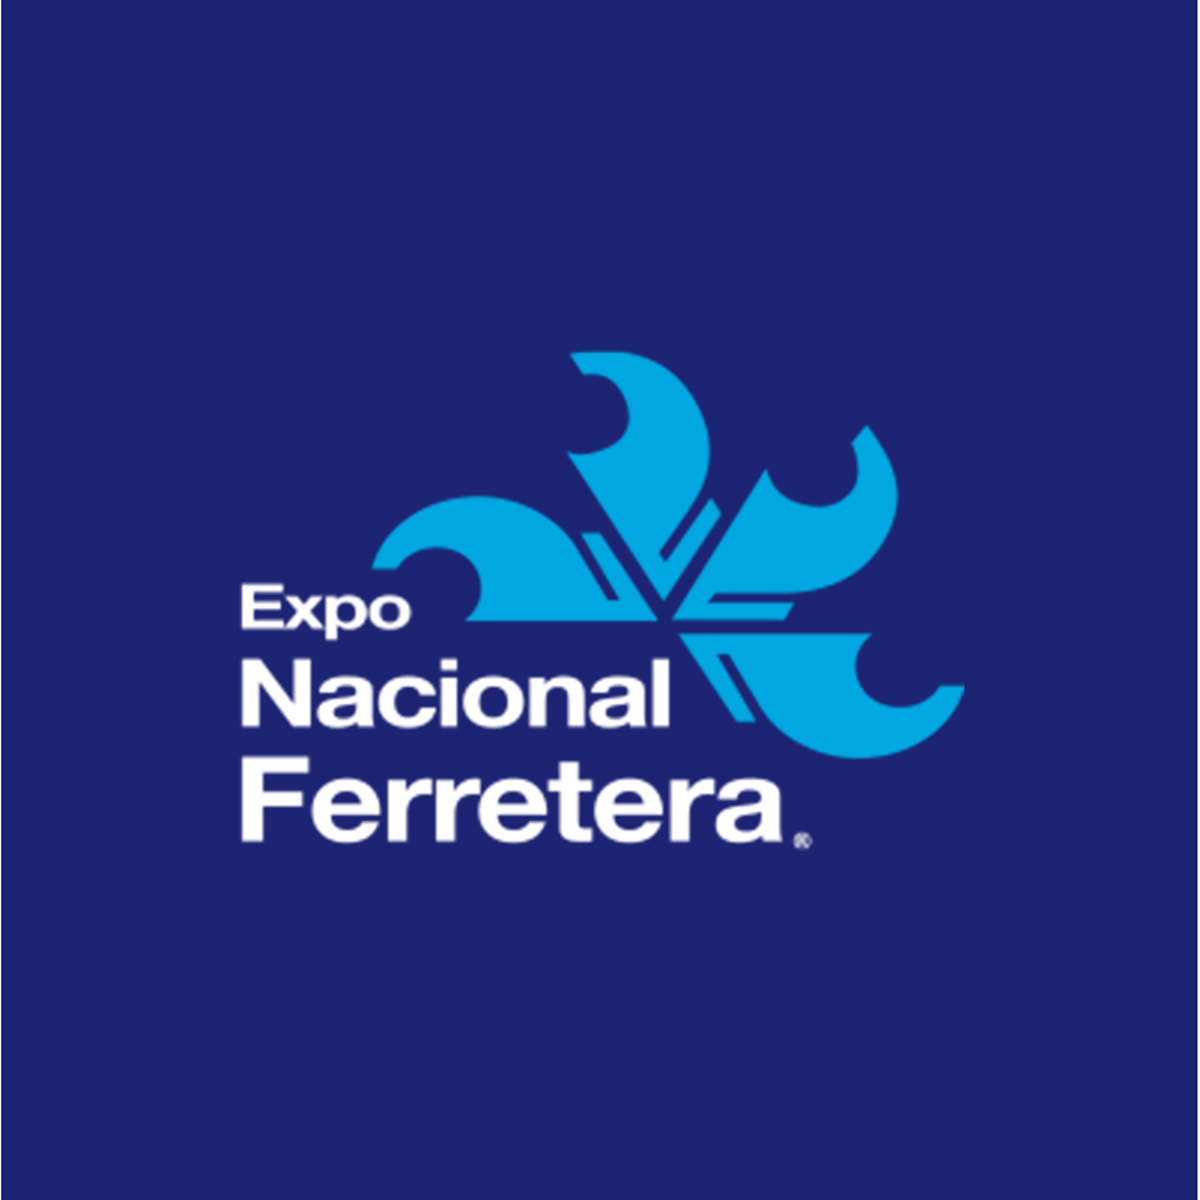 墨西哥国际五金工具展览会Expo Nacional Ferretera